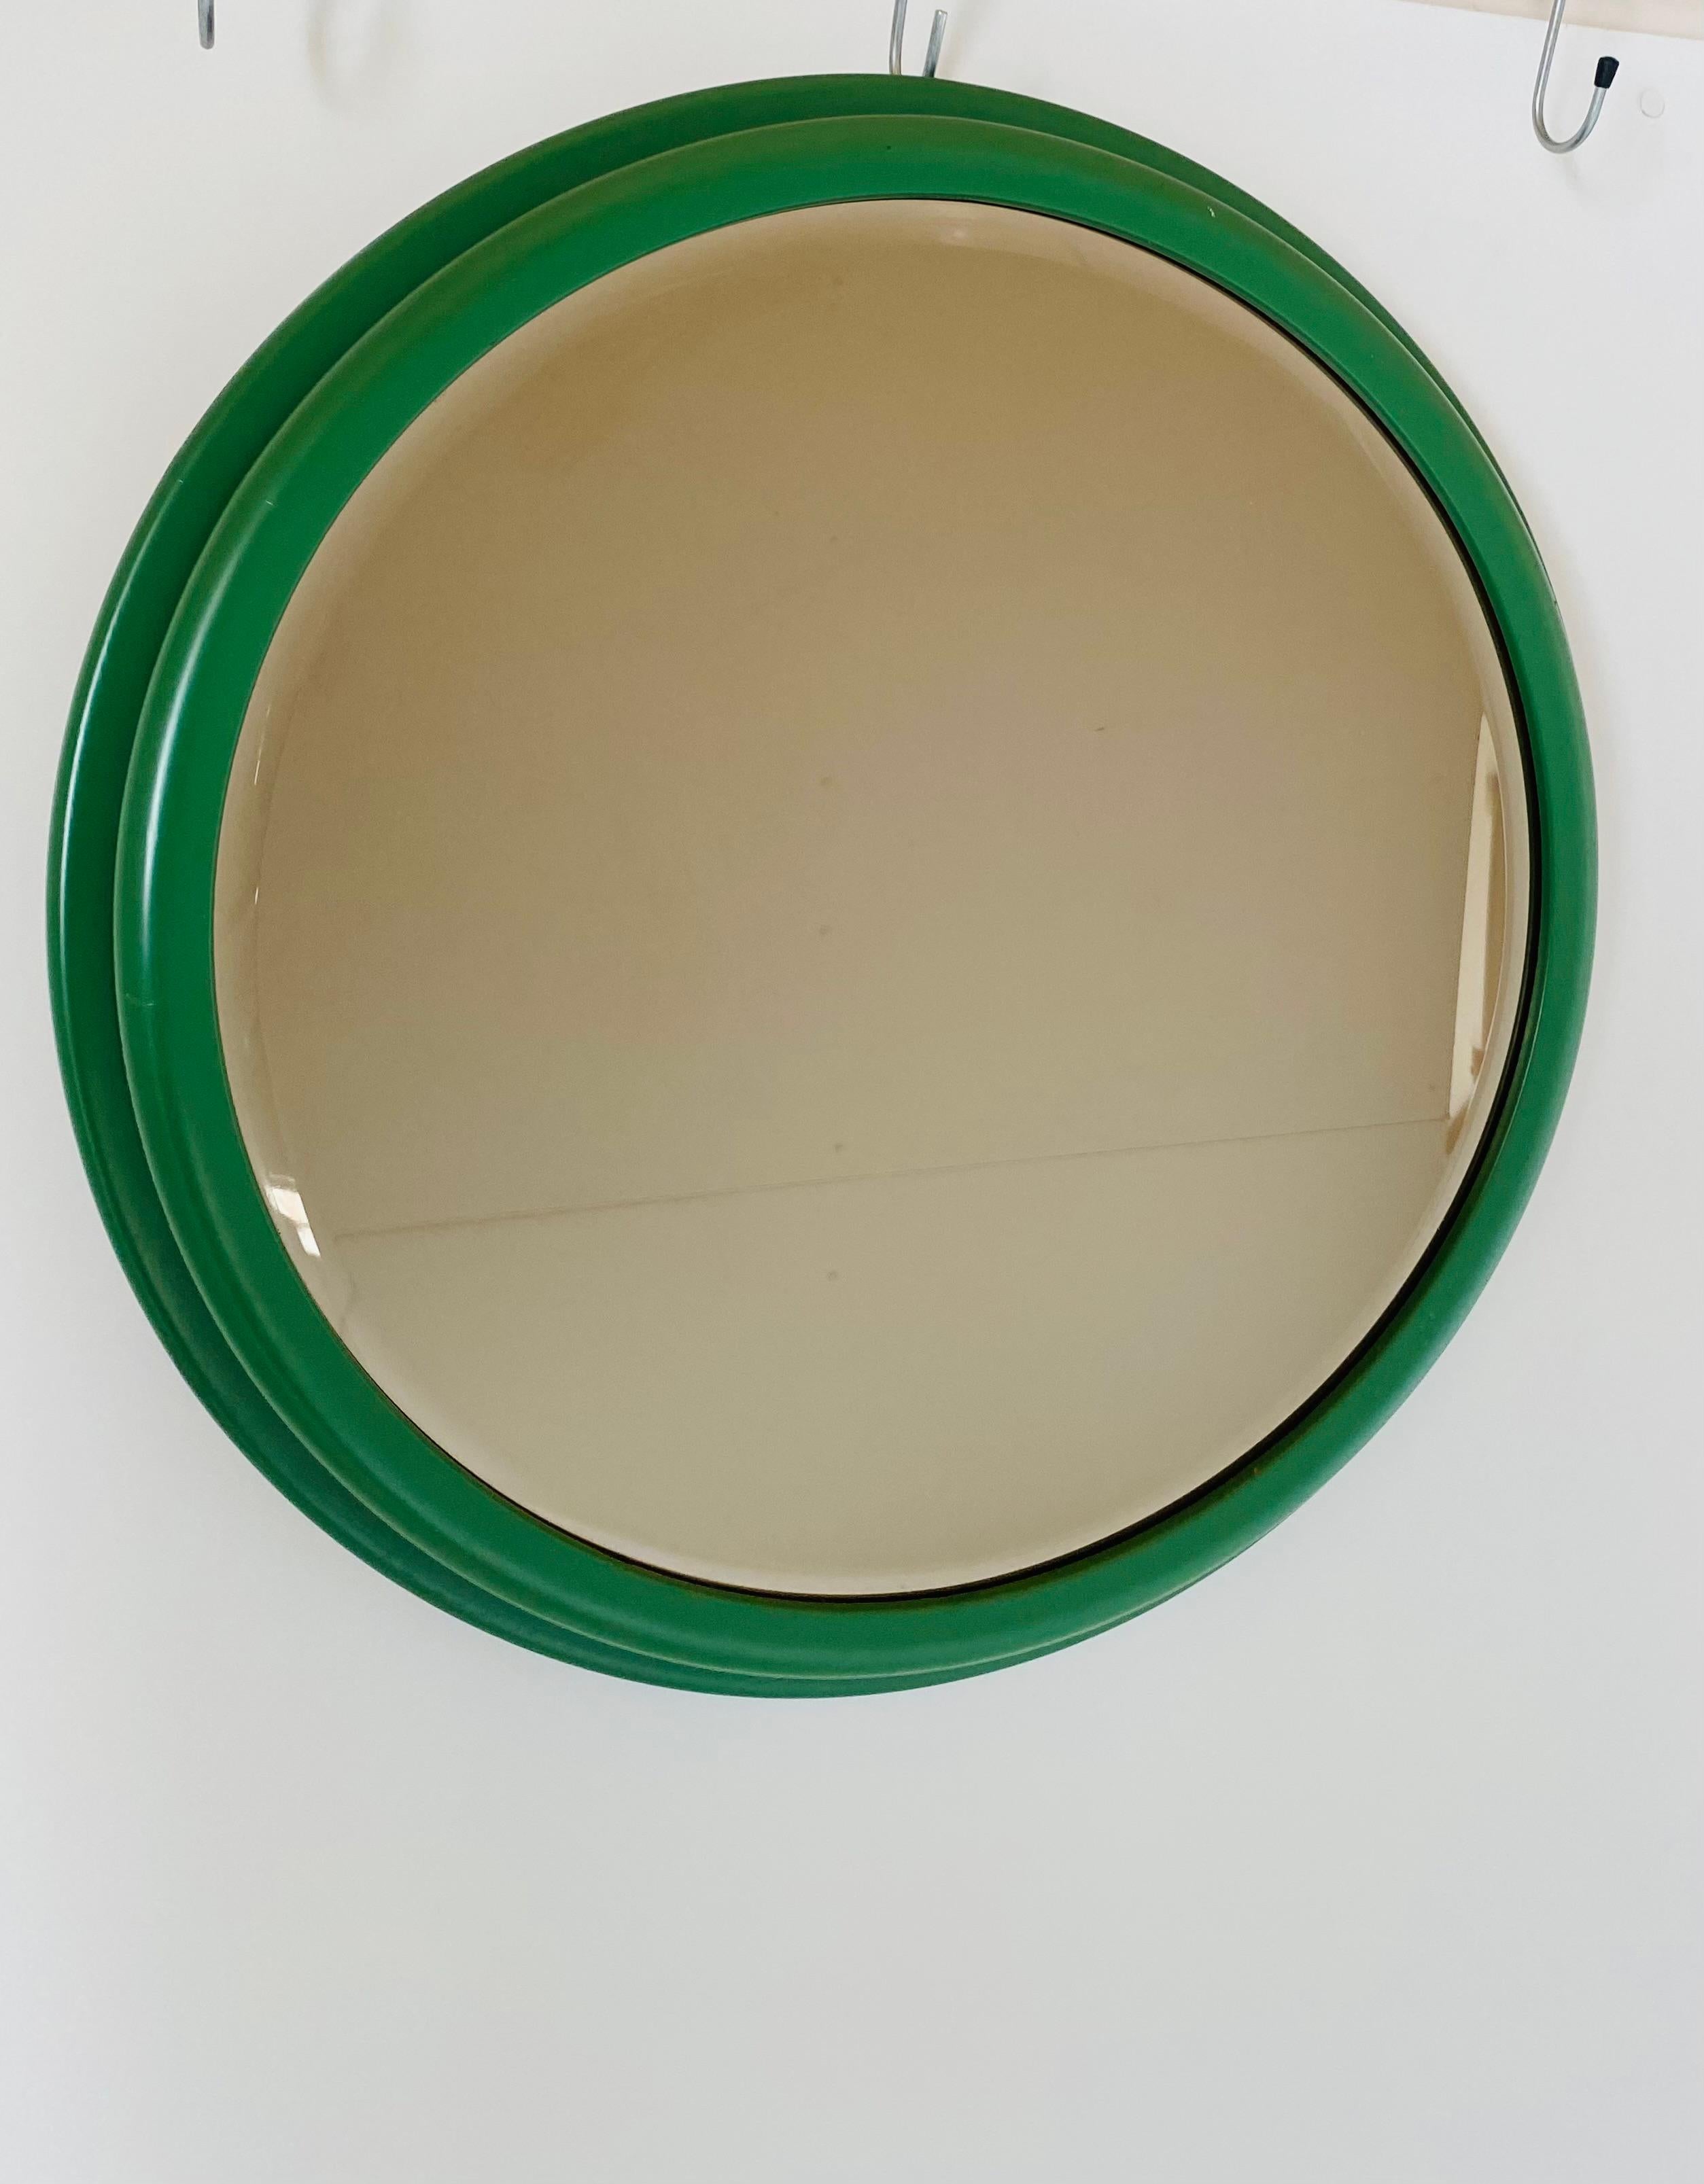 Miroir mural rond vintage vert, Italie, années 1960.
Miroir mural rond des années 1960 avec cadre en bois fin et verre taillé. Produit en Italie. 
En très bon état avec seulement quelques signes du temps. 

Taille (cm) : 65 cm de diamètre.

Visitez